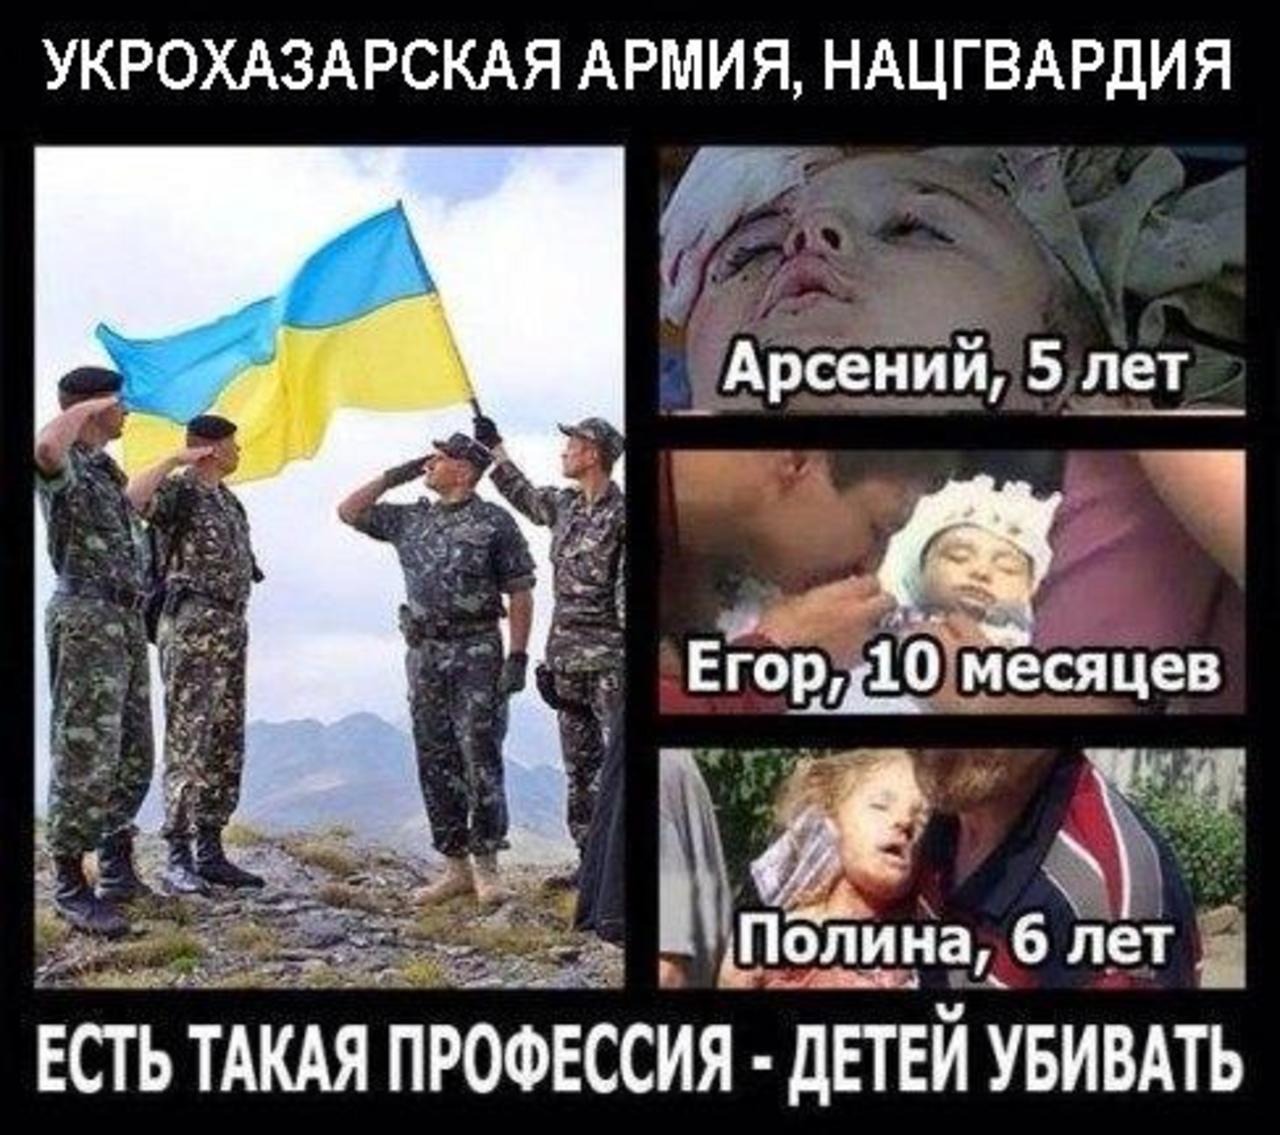 Хохлы про крокус. Демотиваторы про войну с Украиной. Украинская армия демотиваторы. Демотиваторы про войну на Донбассе.